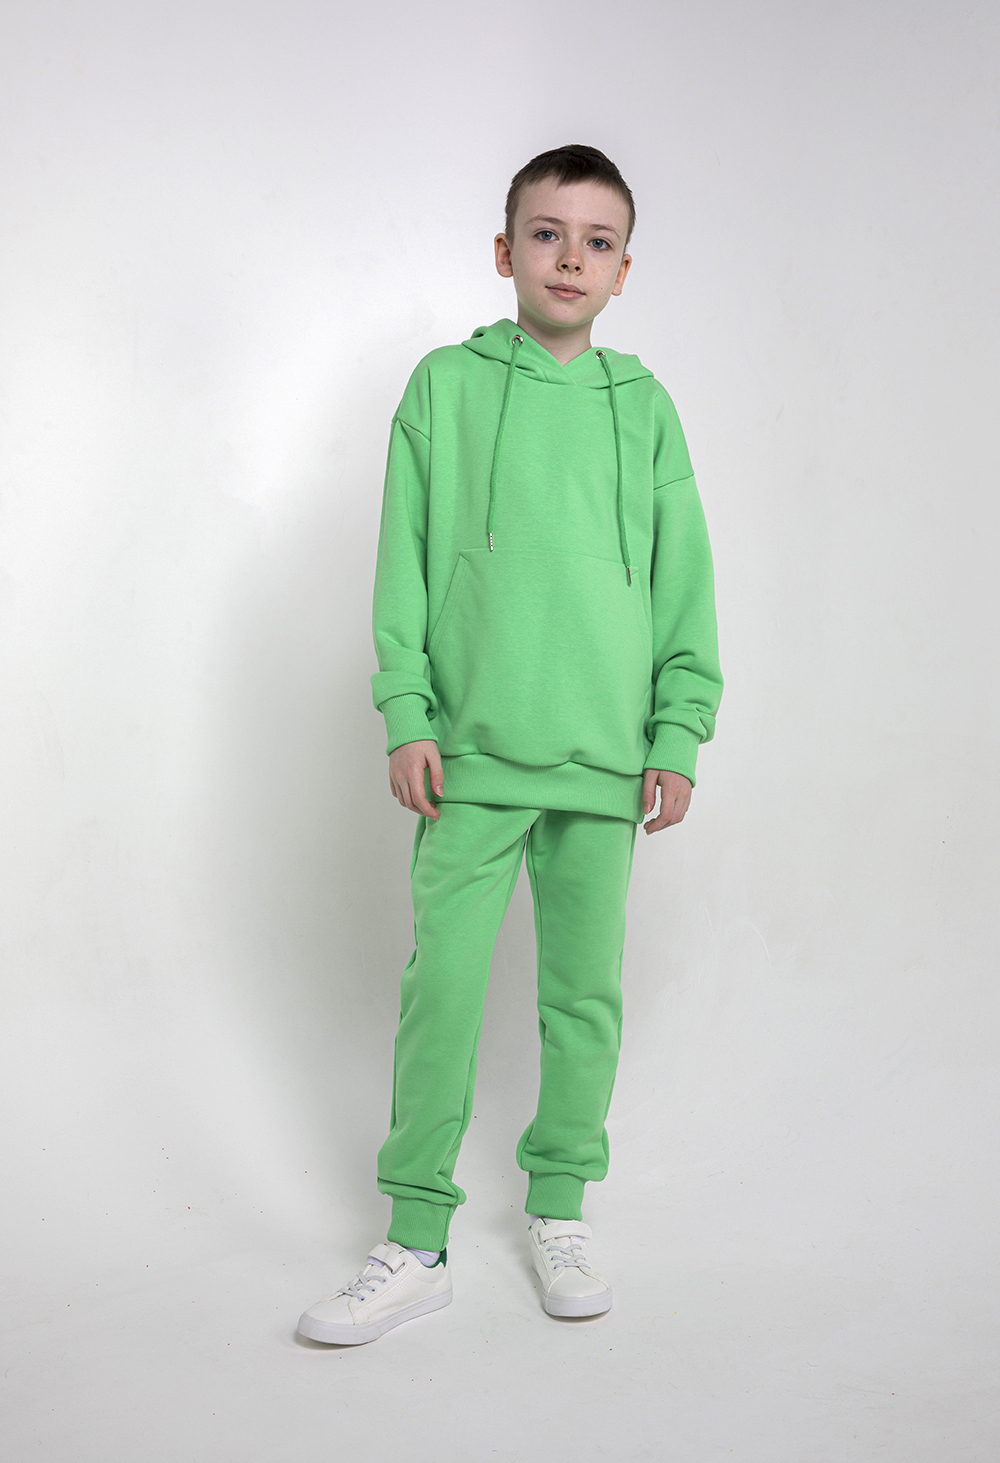 Детский спортивный костюм, МаdbаТ, к0022, р.164, цв. зеленый